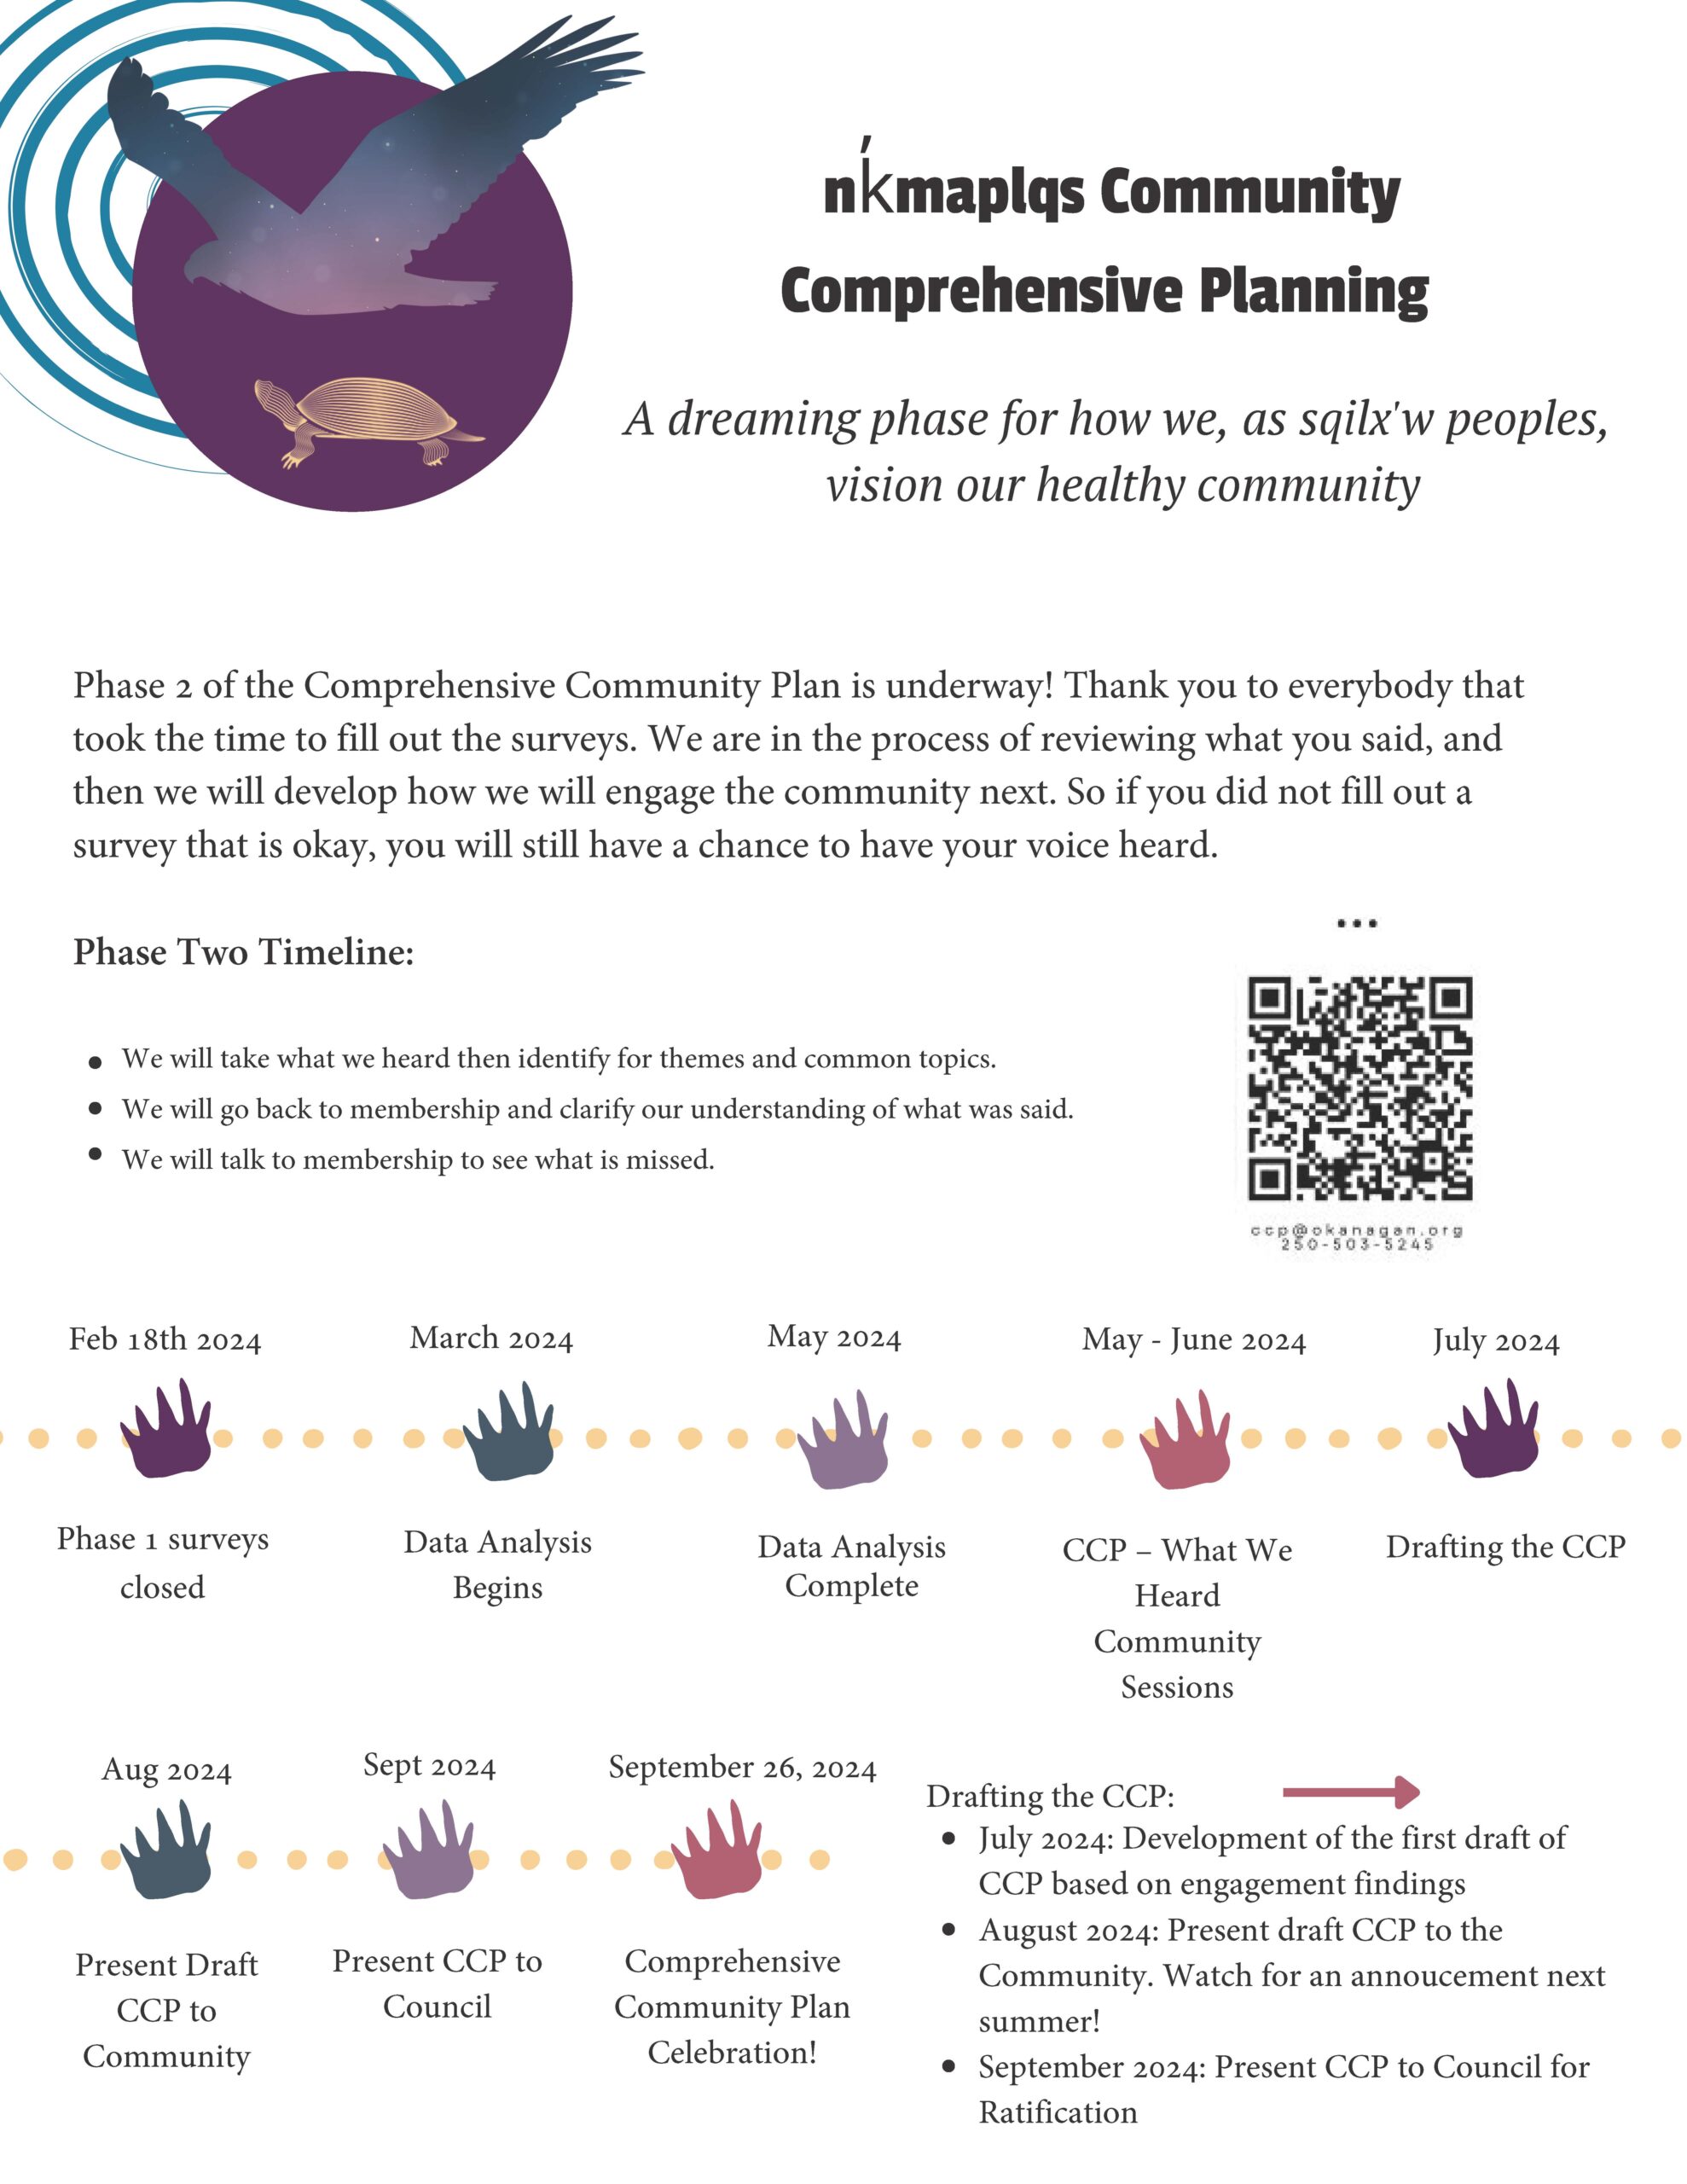 Comprehensive Community Planning Phase 2 timeline.